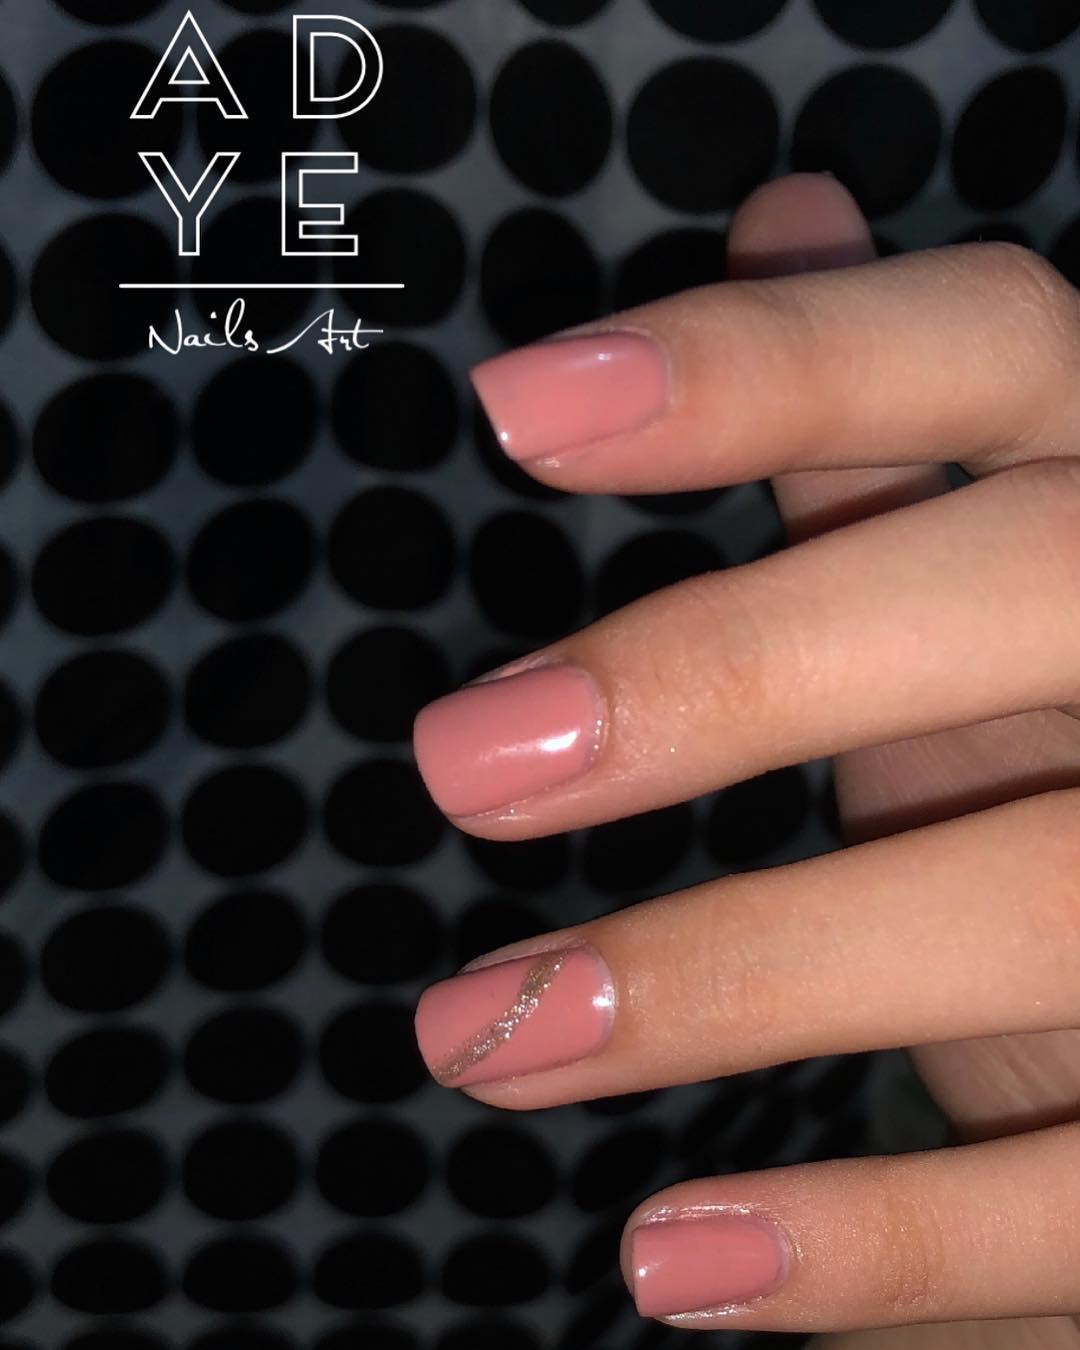 Aplicação de gel semi-permanente em unha natural
.
.
.
.
.
#nails #glitternails ...